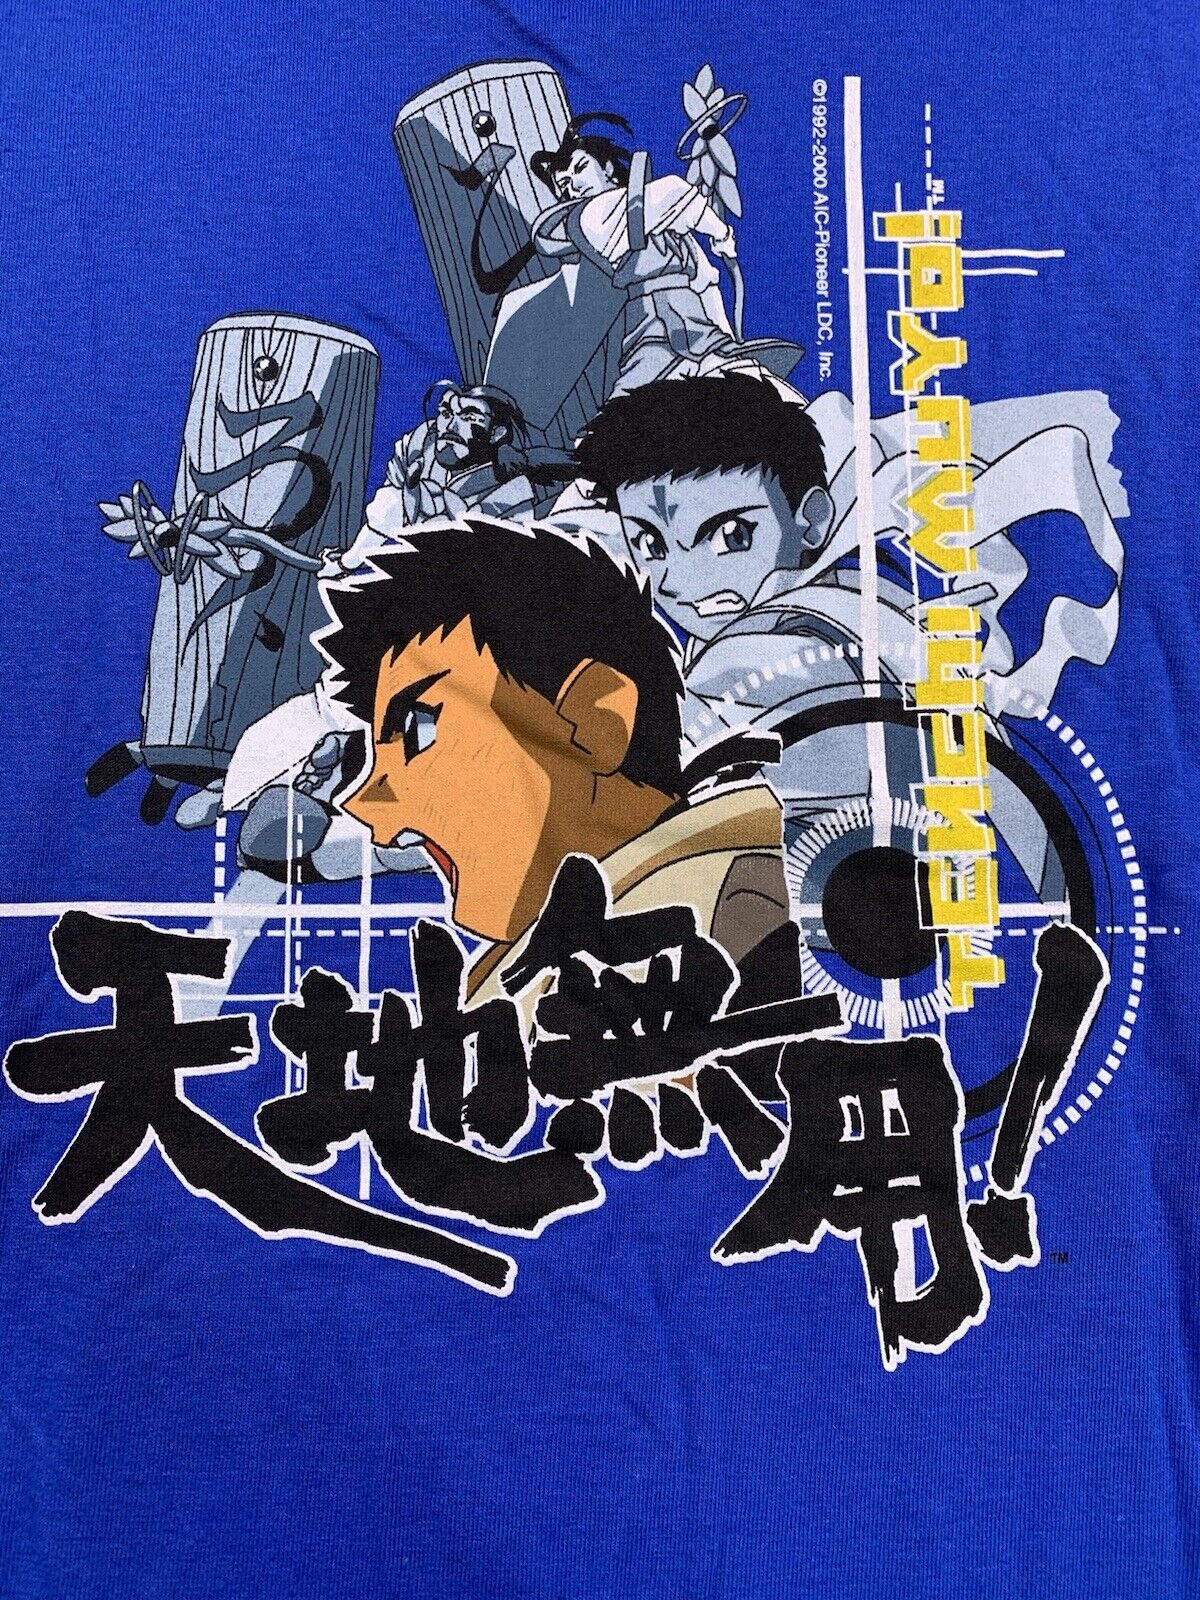 Tenchi Muyo Shirt Youth size Large Vintage 90s Anime Cartoon | eBay